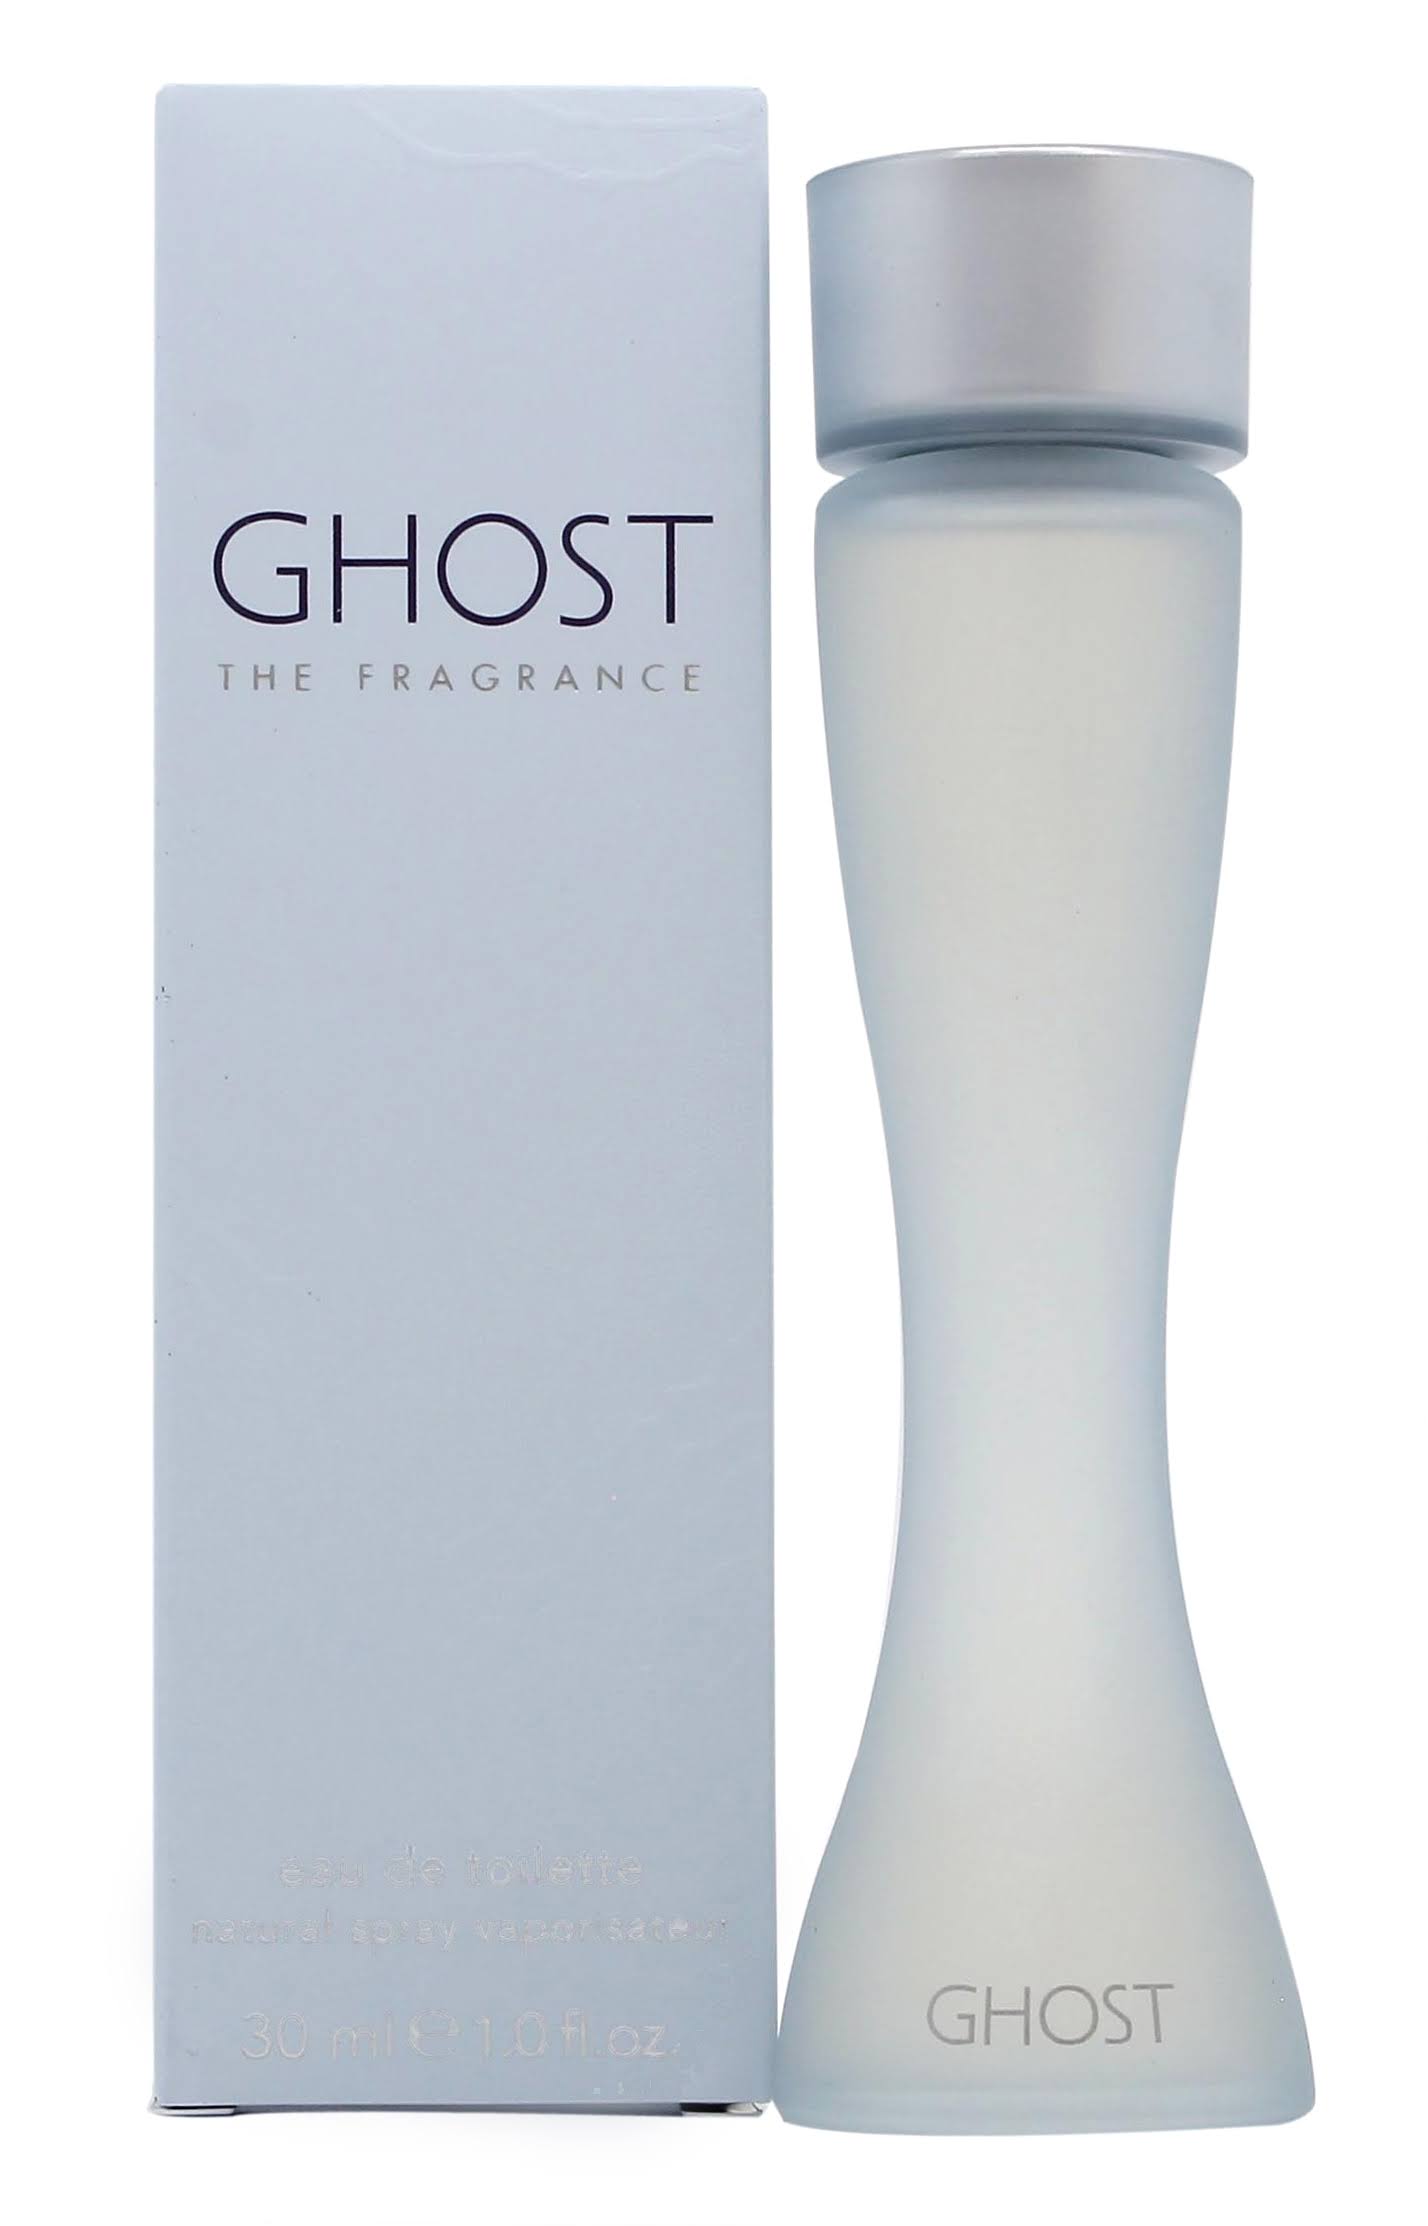 Ghost The Fragrance Women's Eau de Toilette Spray - 30ml